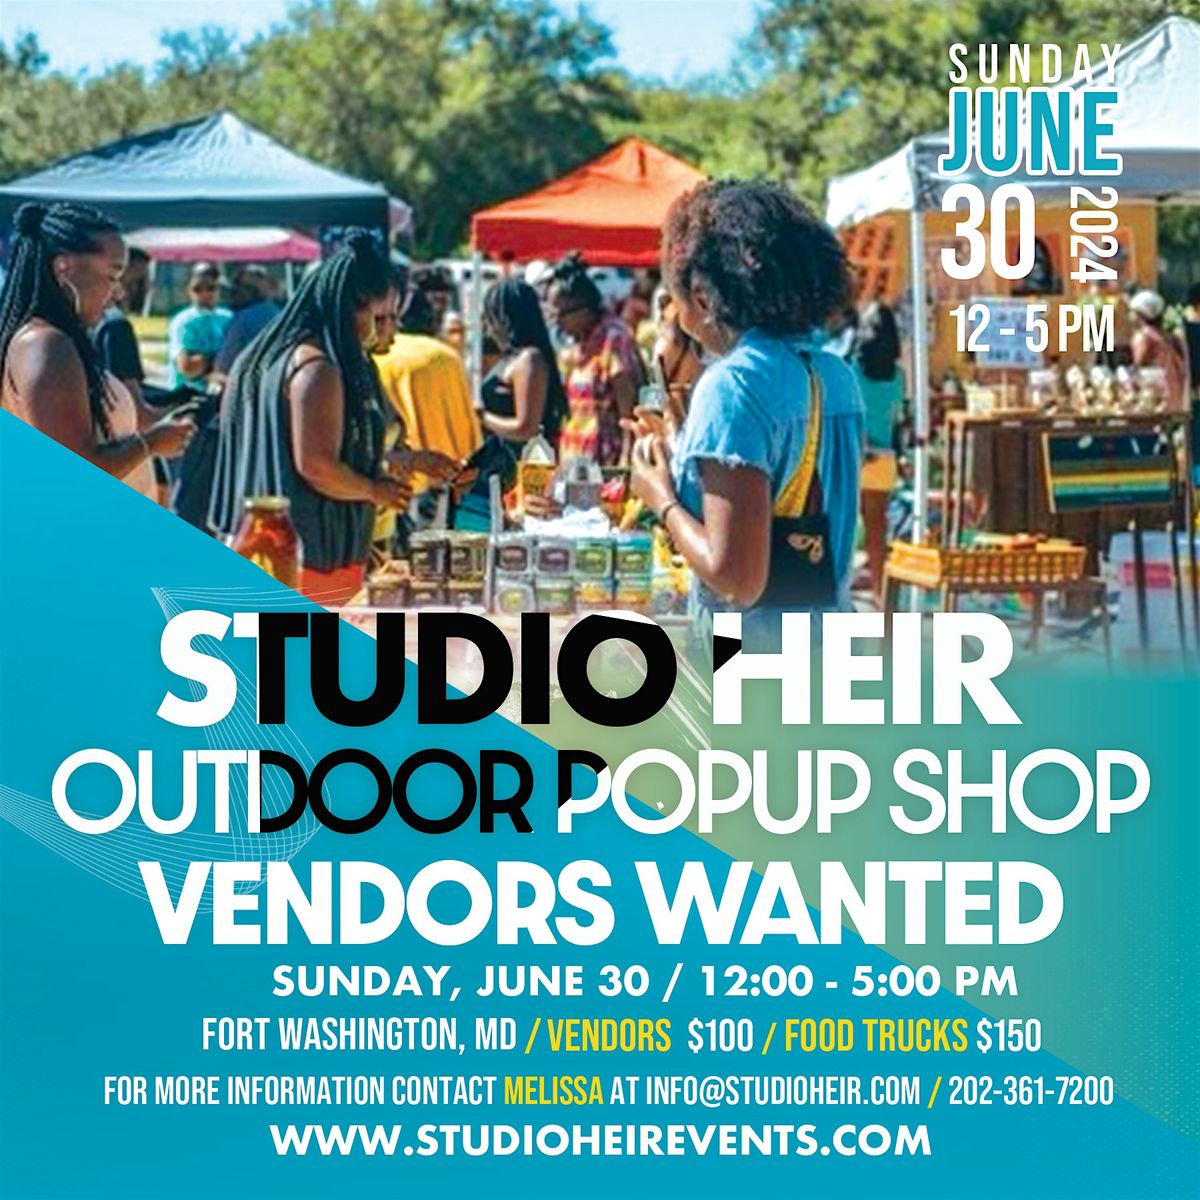 CALLING ALL VENDORS!  - Studio Heir Small Business Sunday's Pop Up Shop